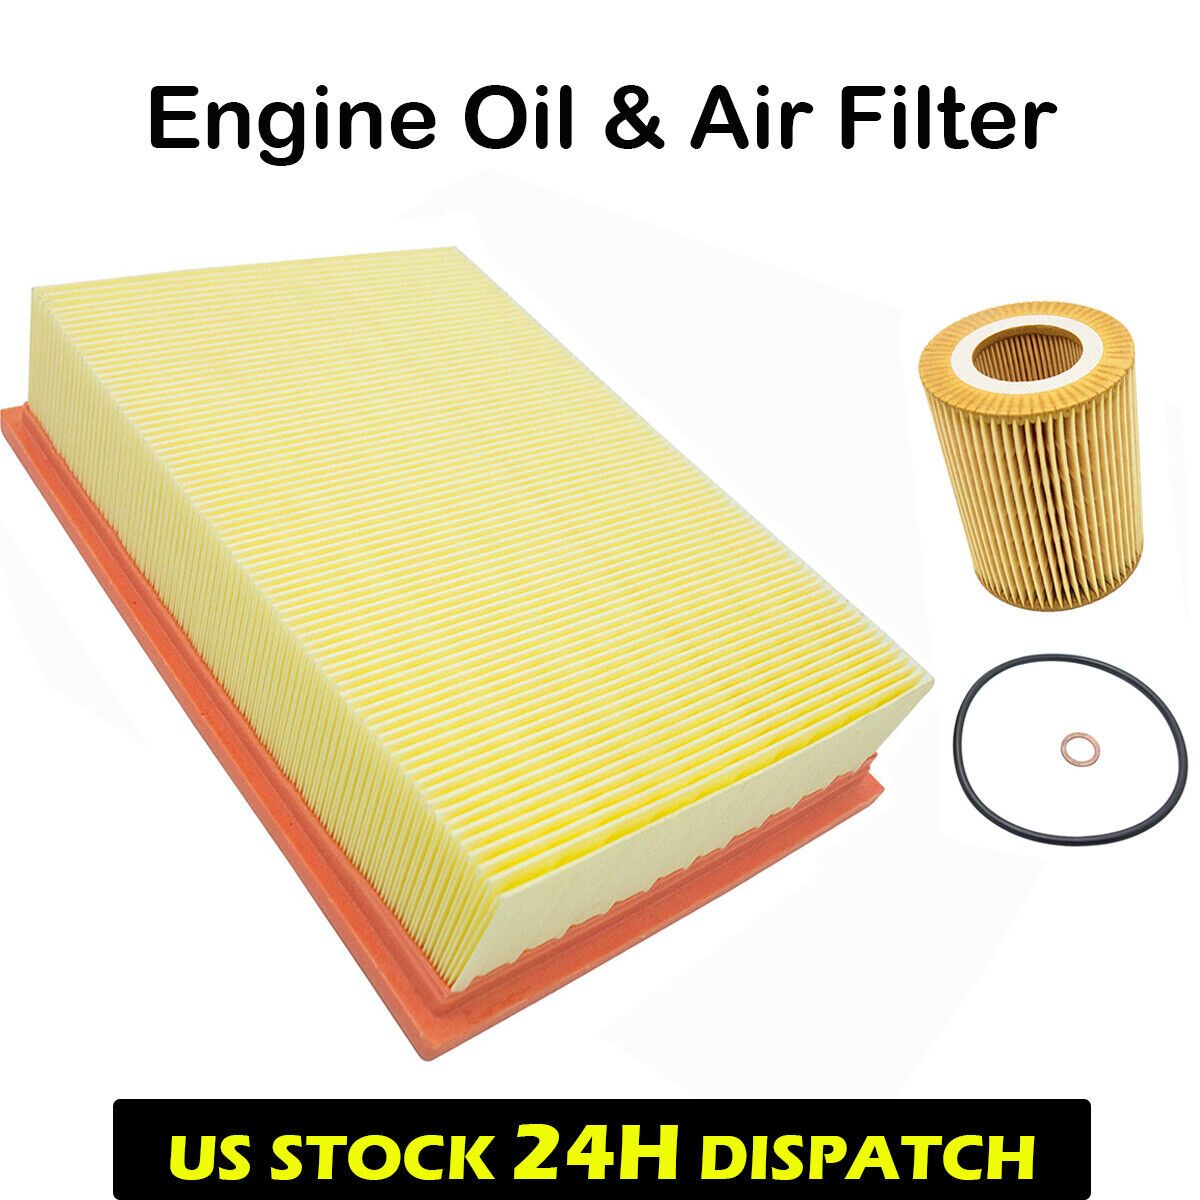 Engine Air & Oil Filter For BMW E36 E39 E46 E53 E60 E83 320i 323i 325i X3 Z3 Z4